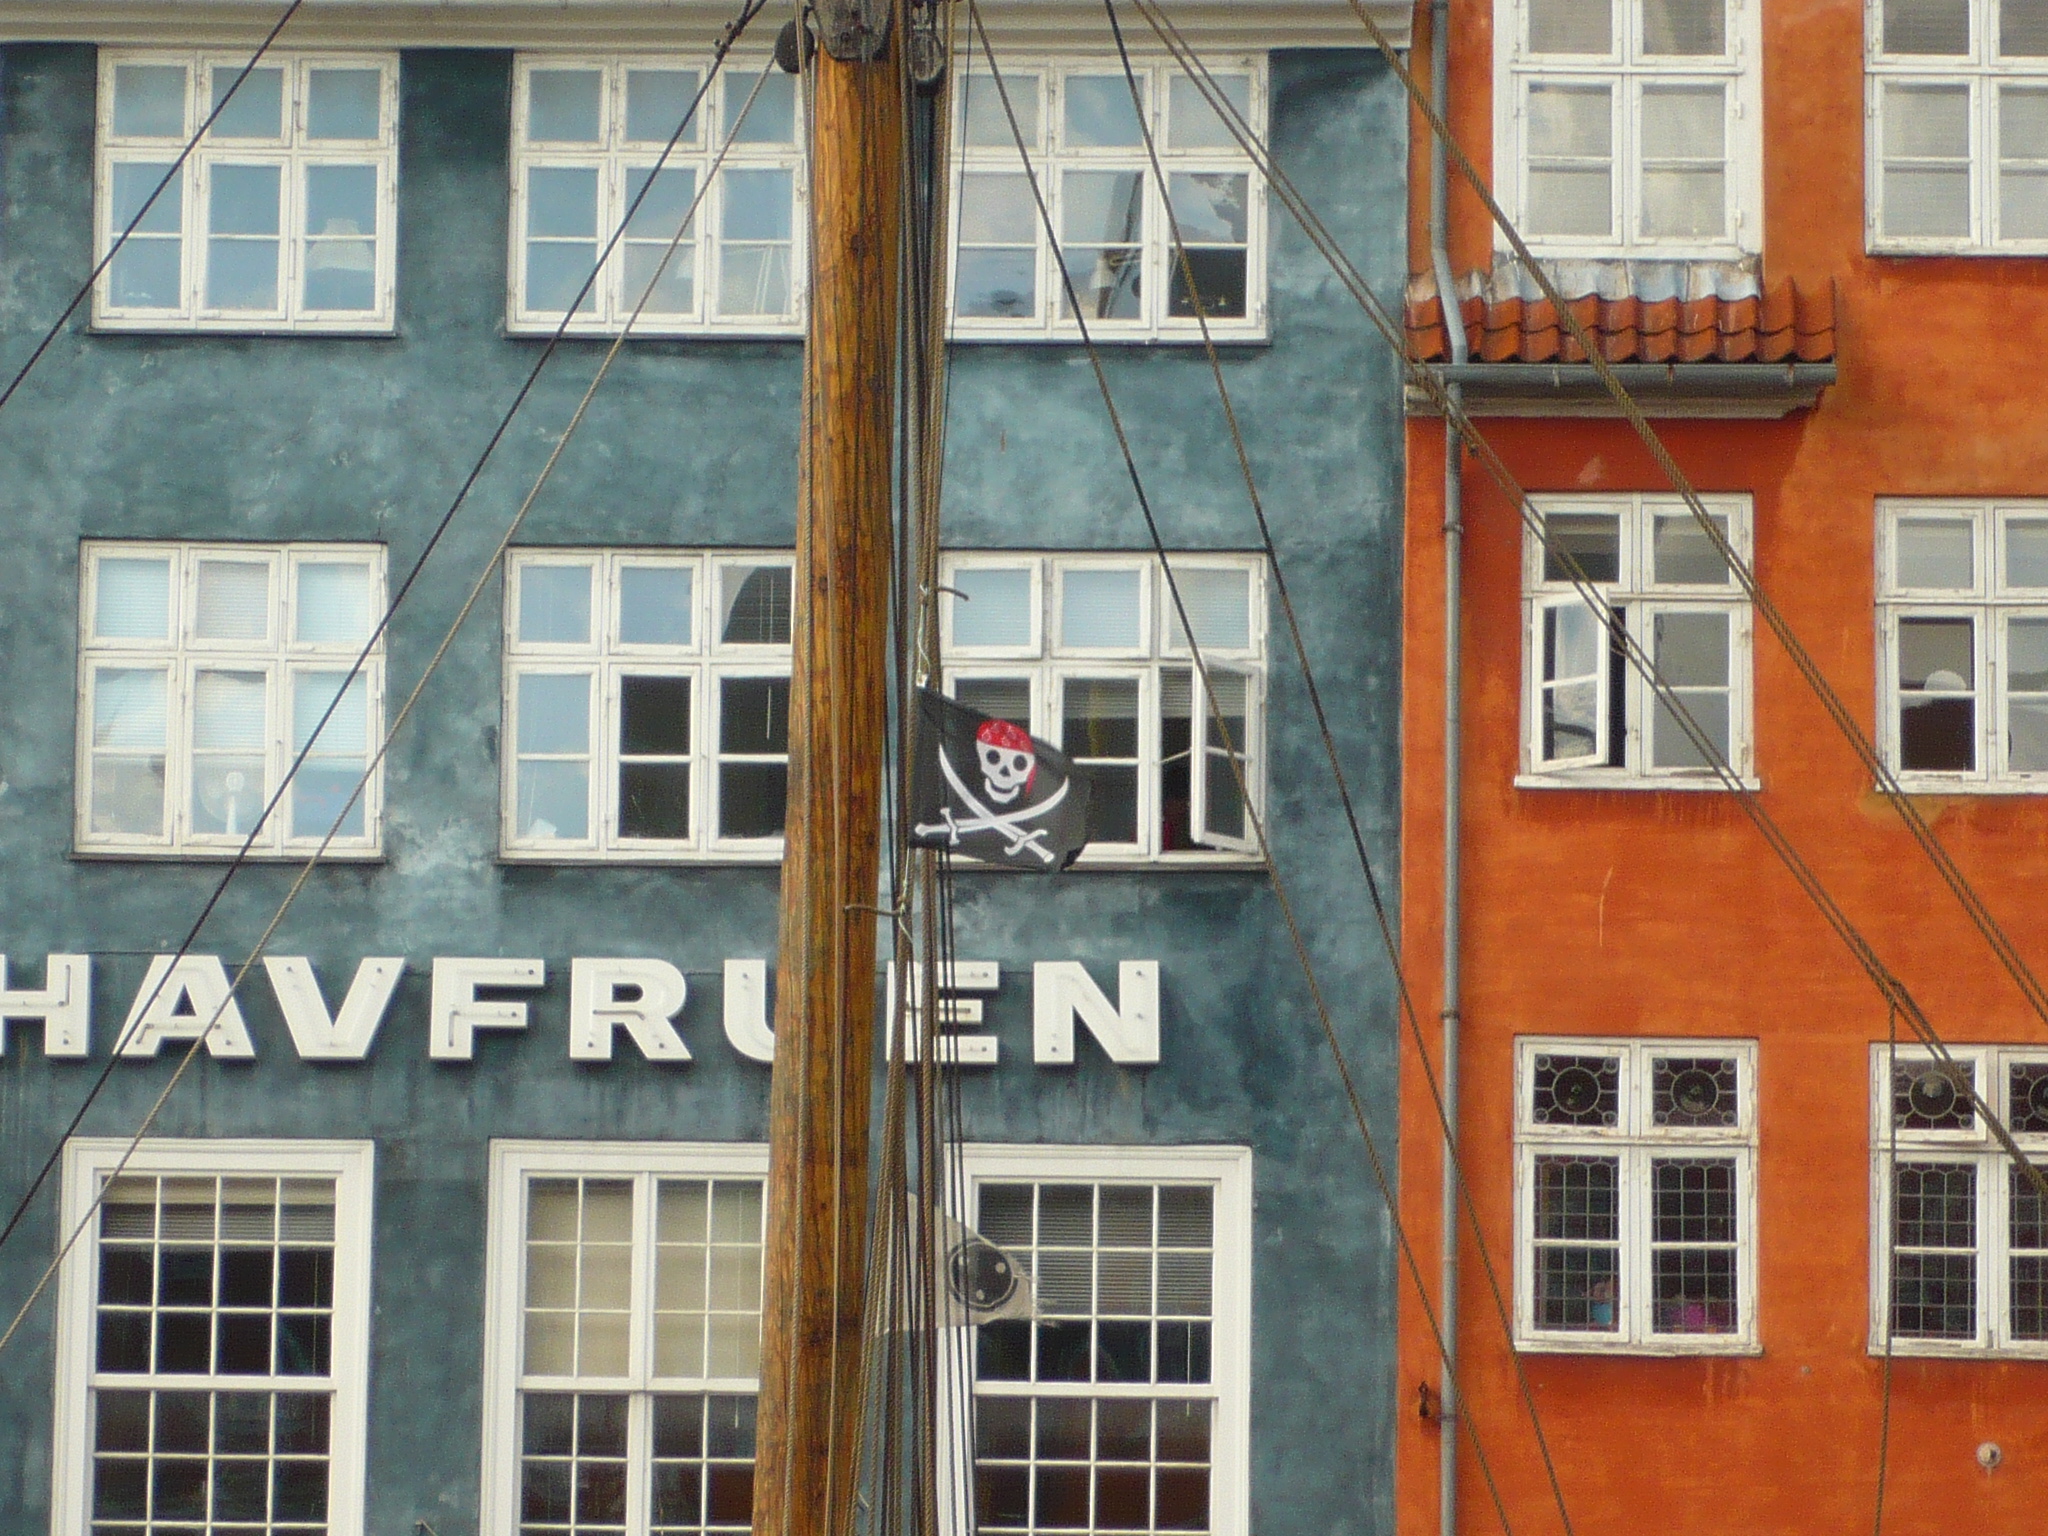 Nyhavn - Copenhagen